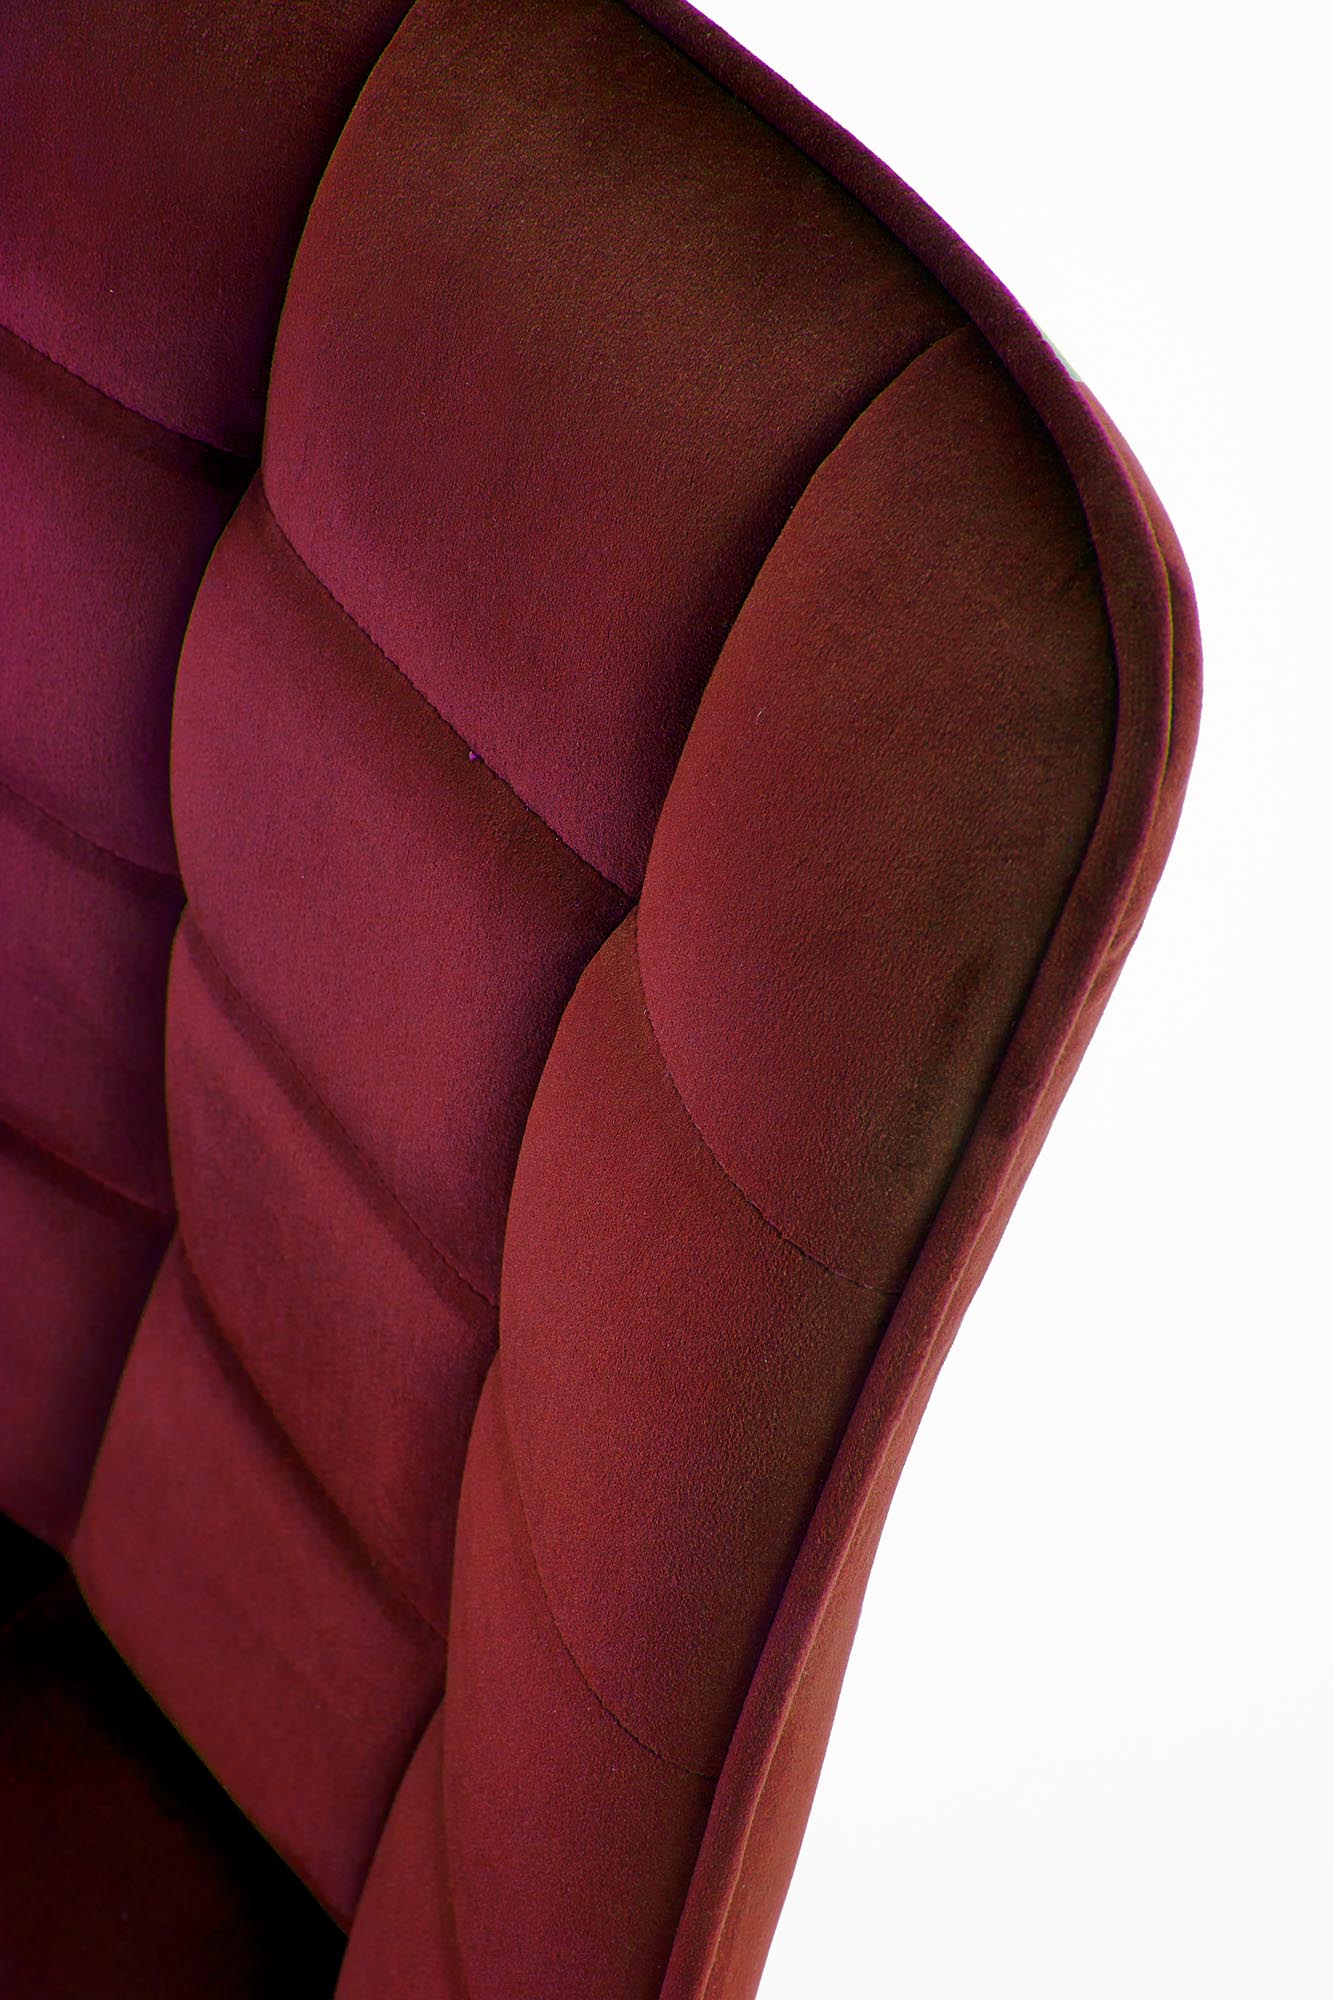 Scaun tapițat K332 - burgundy Židle čalouněné k332 - bordová